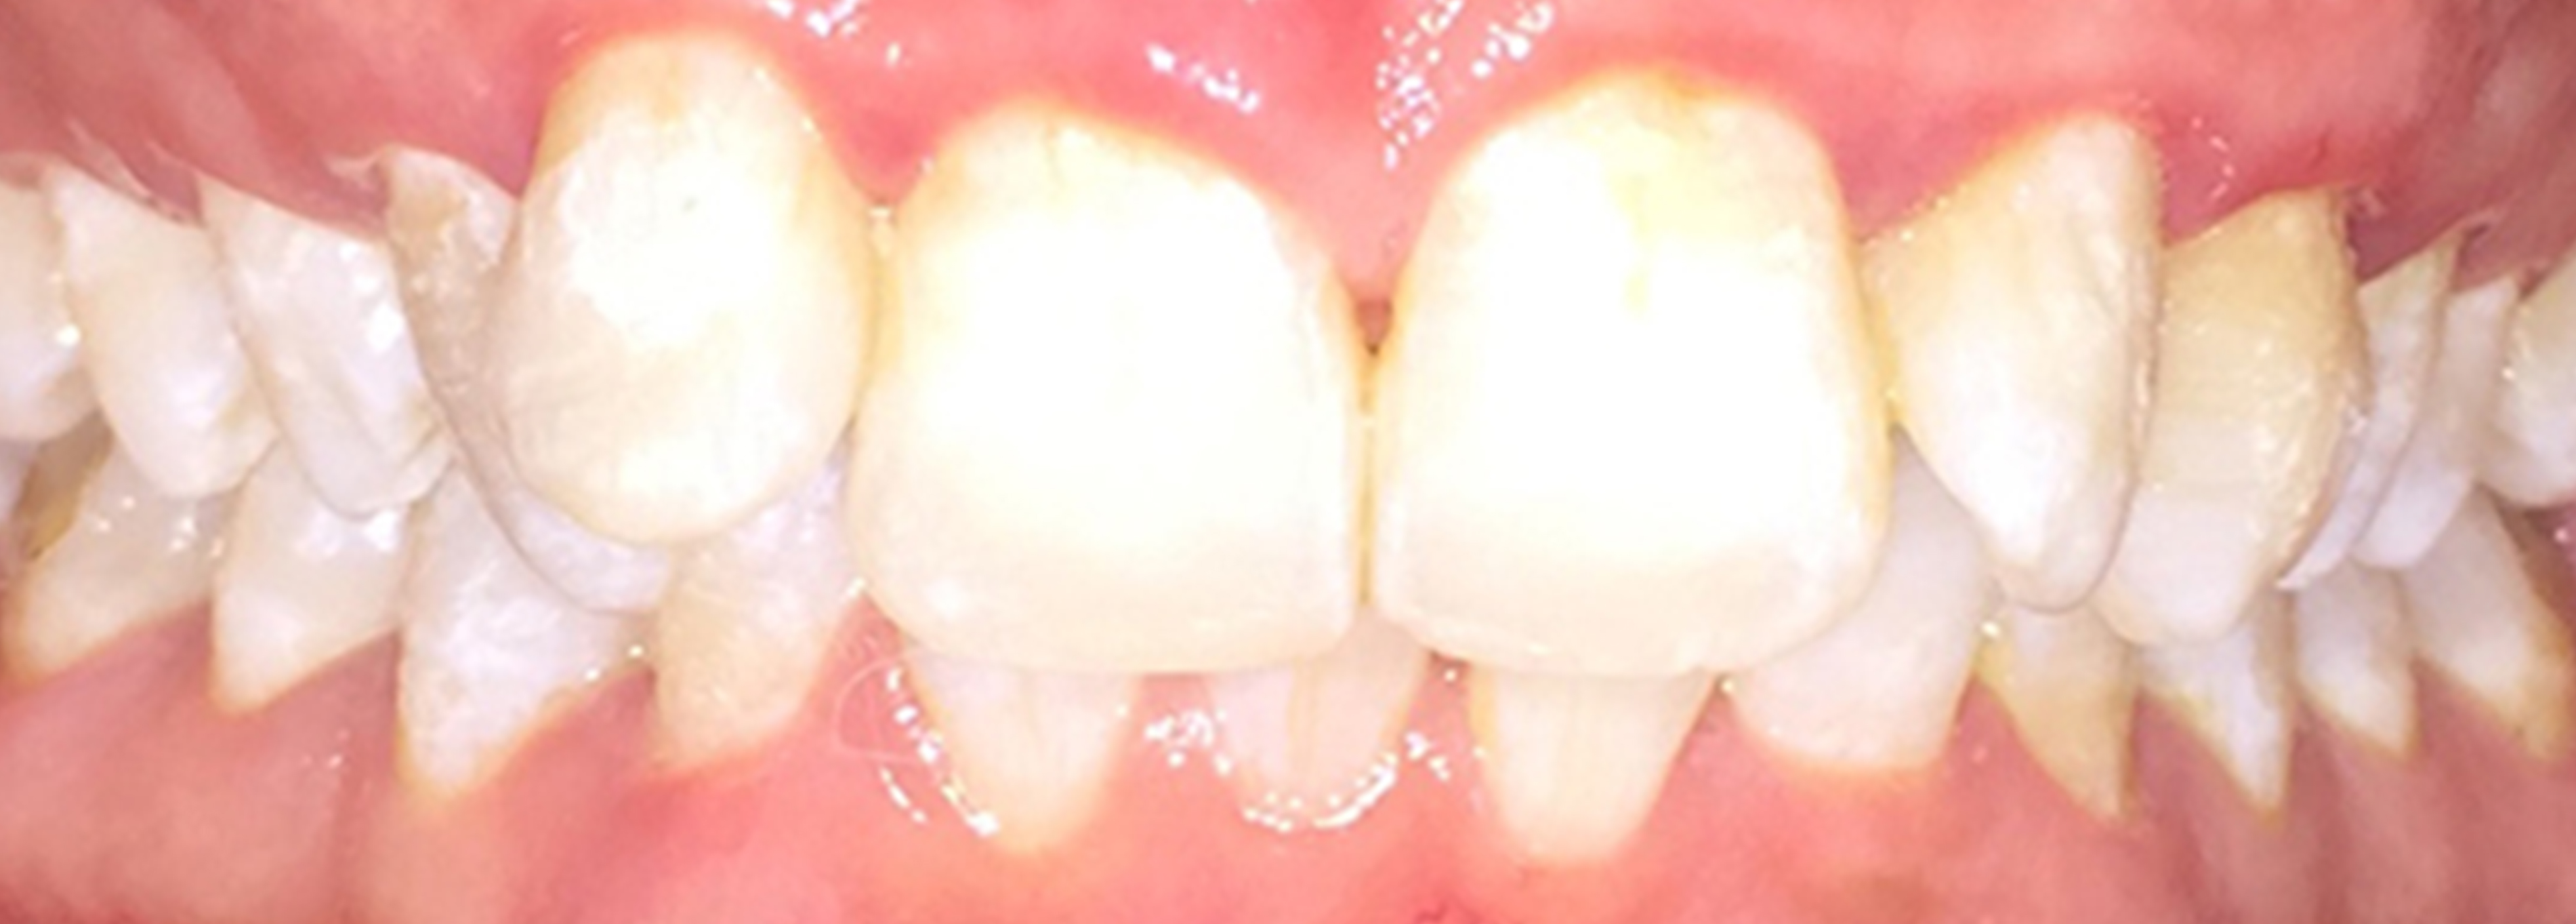 Side Gap Teeth | Before Treatment | Flash Orthodontics